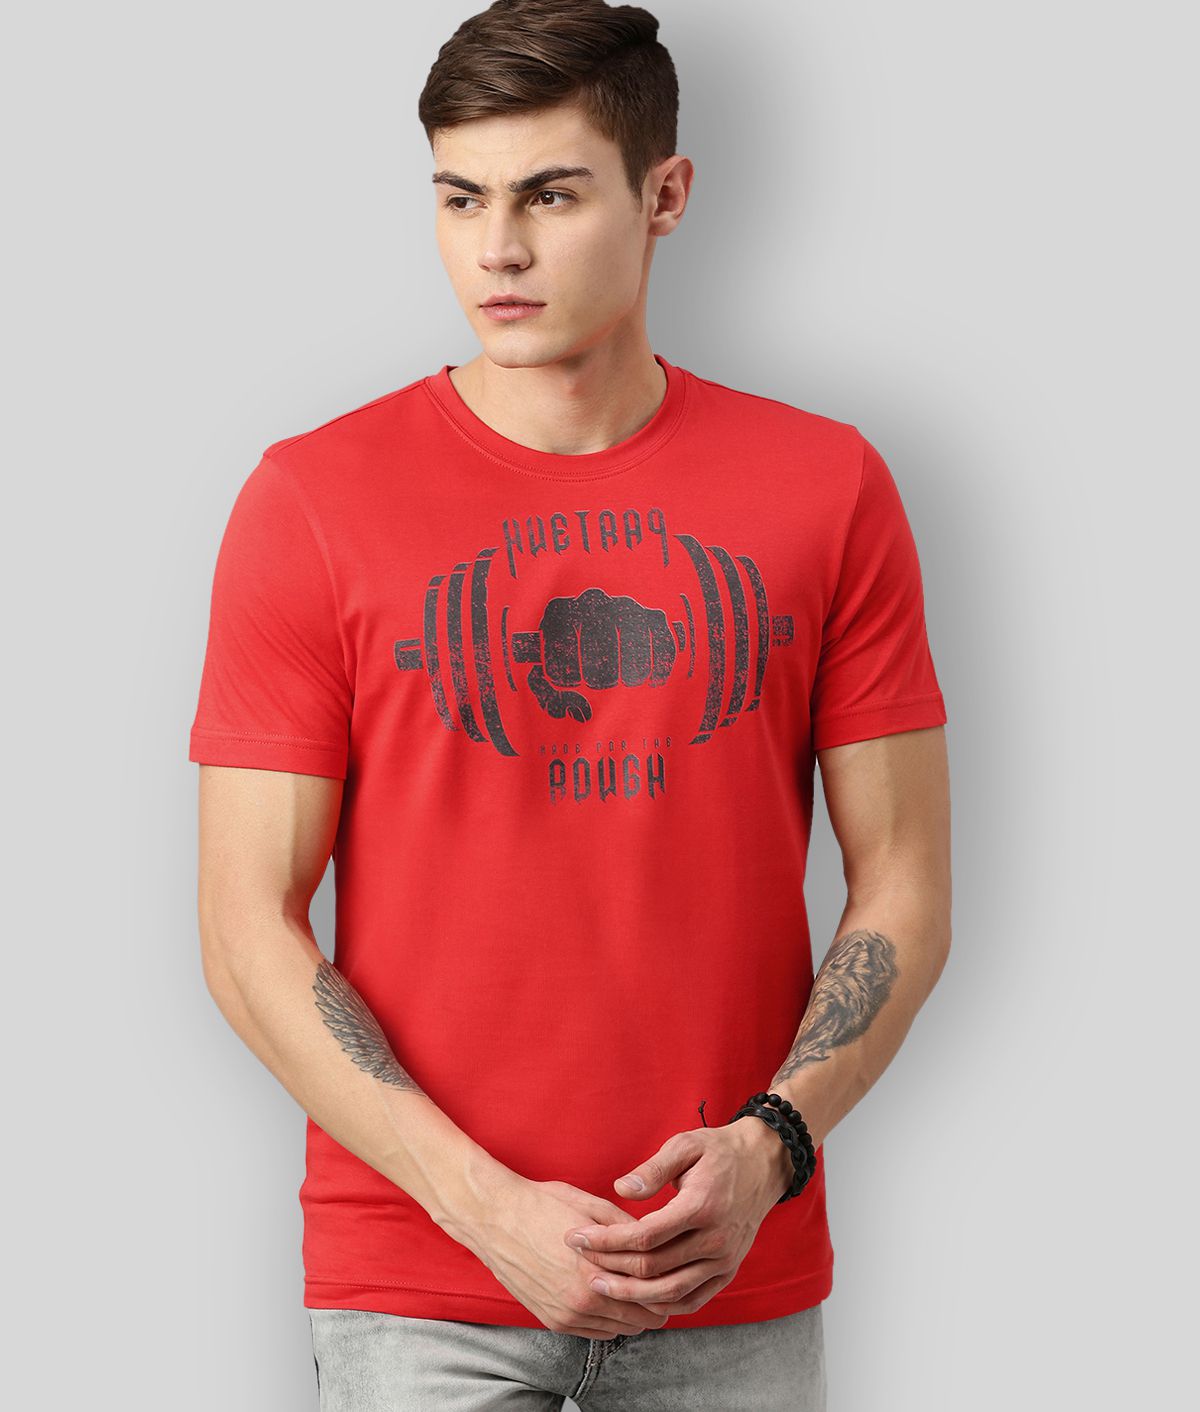     			Huetrap - Red Cotton Regular Fit  Men's T-Shirt ( Pack of 1 )